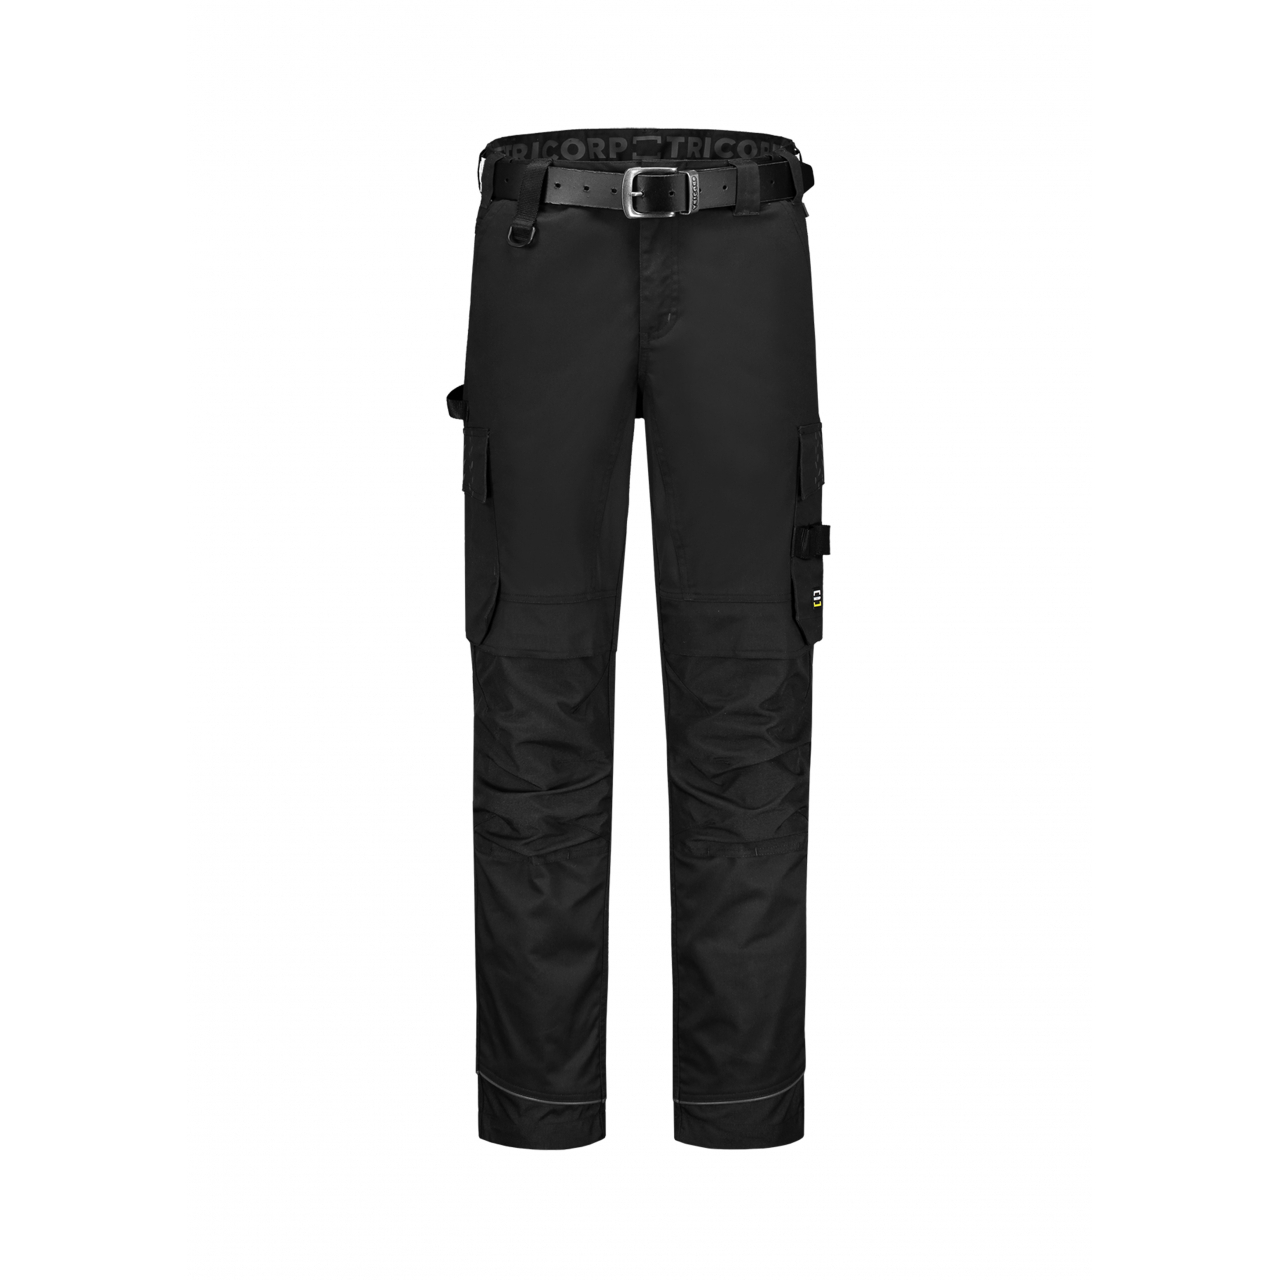 Pracovní kalhoty Tricorp Work Pants Twill Cordura Stretch - černé, 45